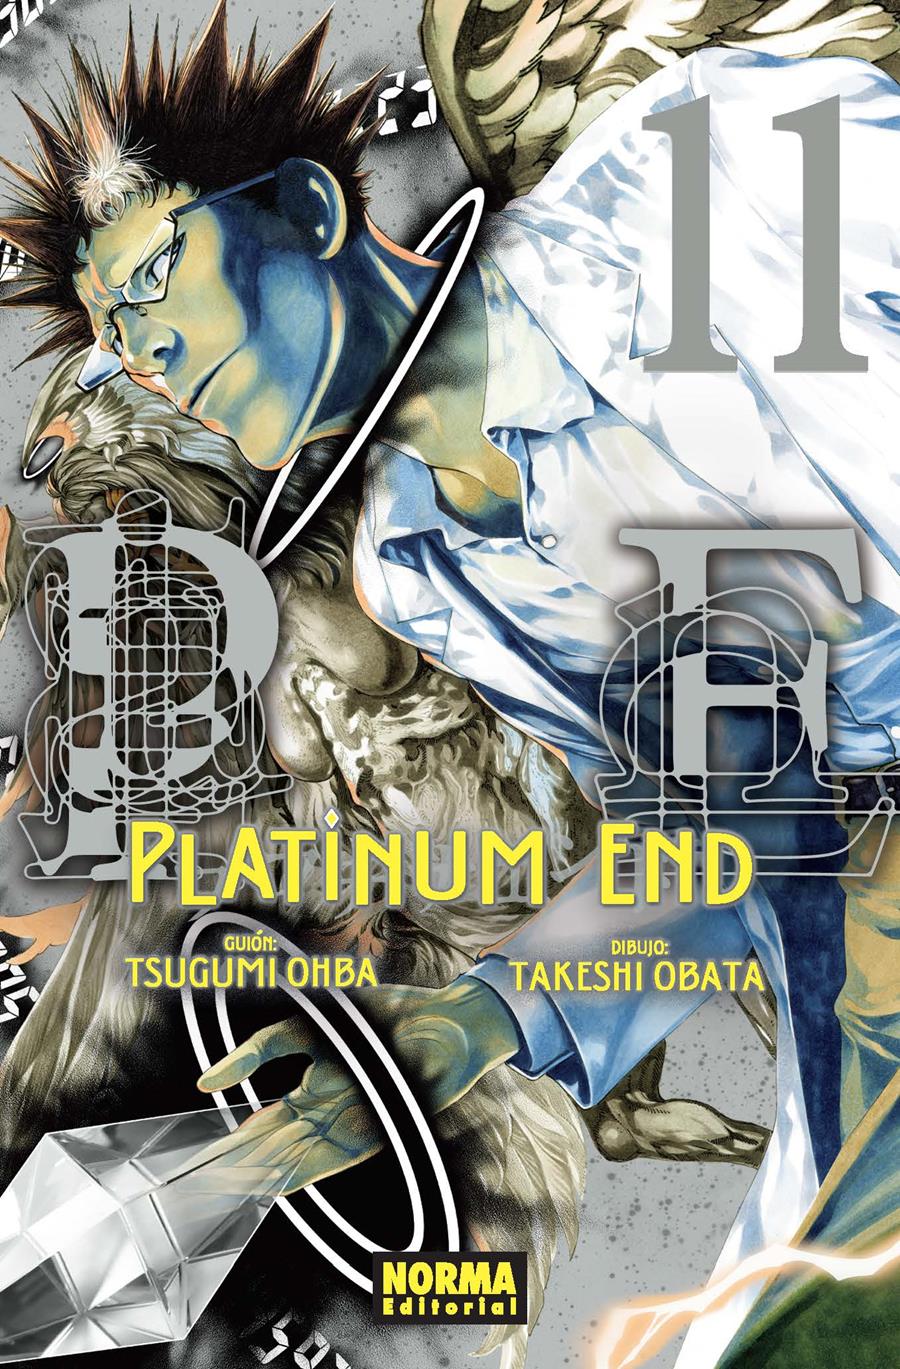 Platinum end 11 | N0720-NOR23 | Tsugumi Ohba, Takeshi Obata | Terra de Còmic - Tu tienda de cómics online especializada en cómics, manga y merchandising